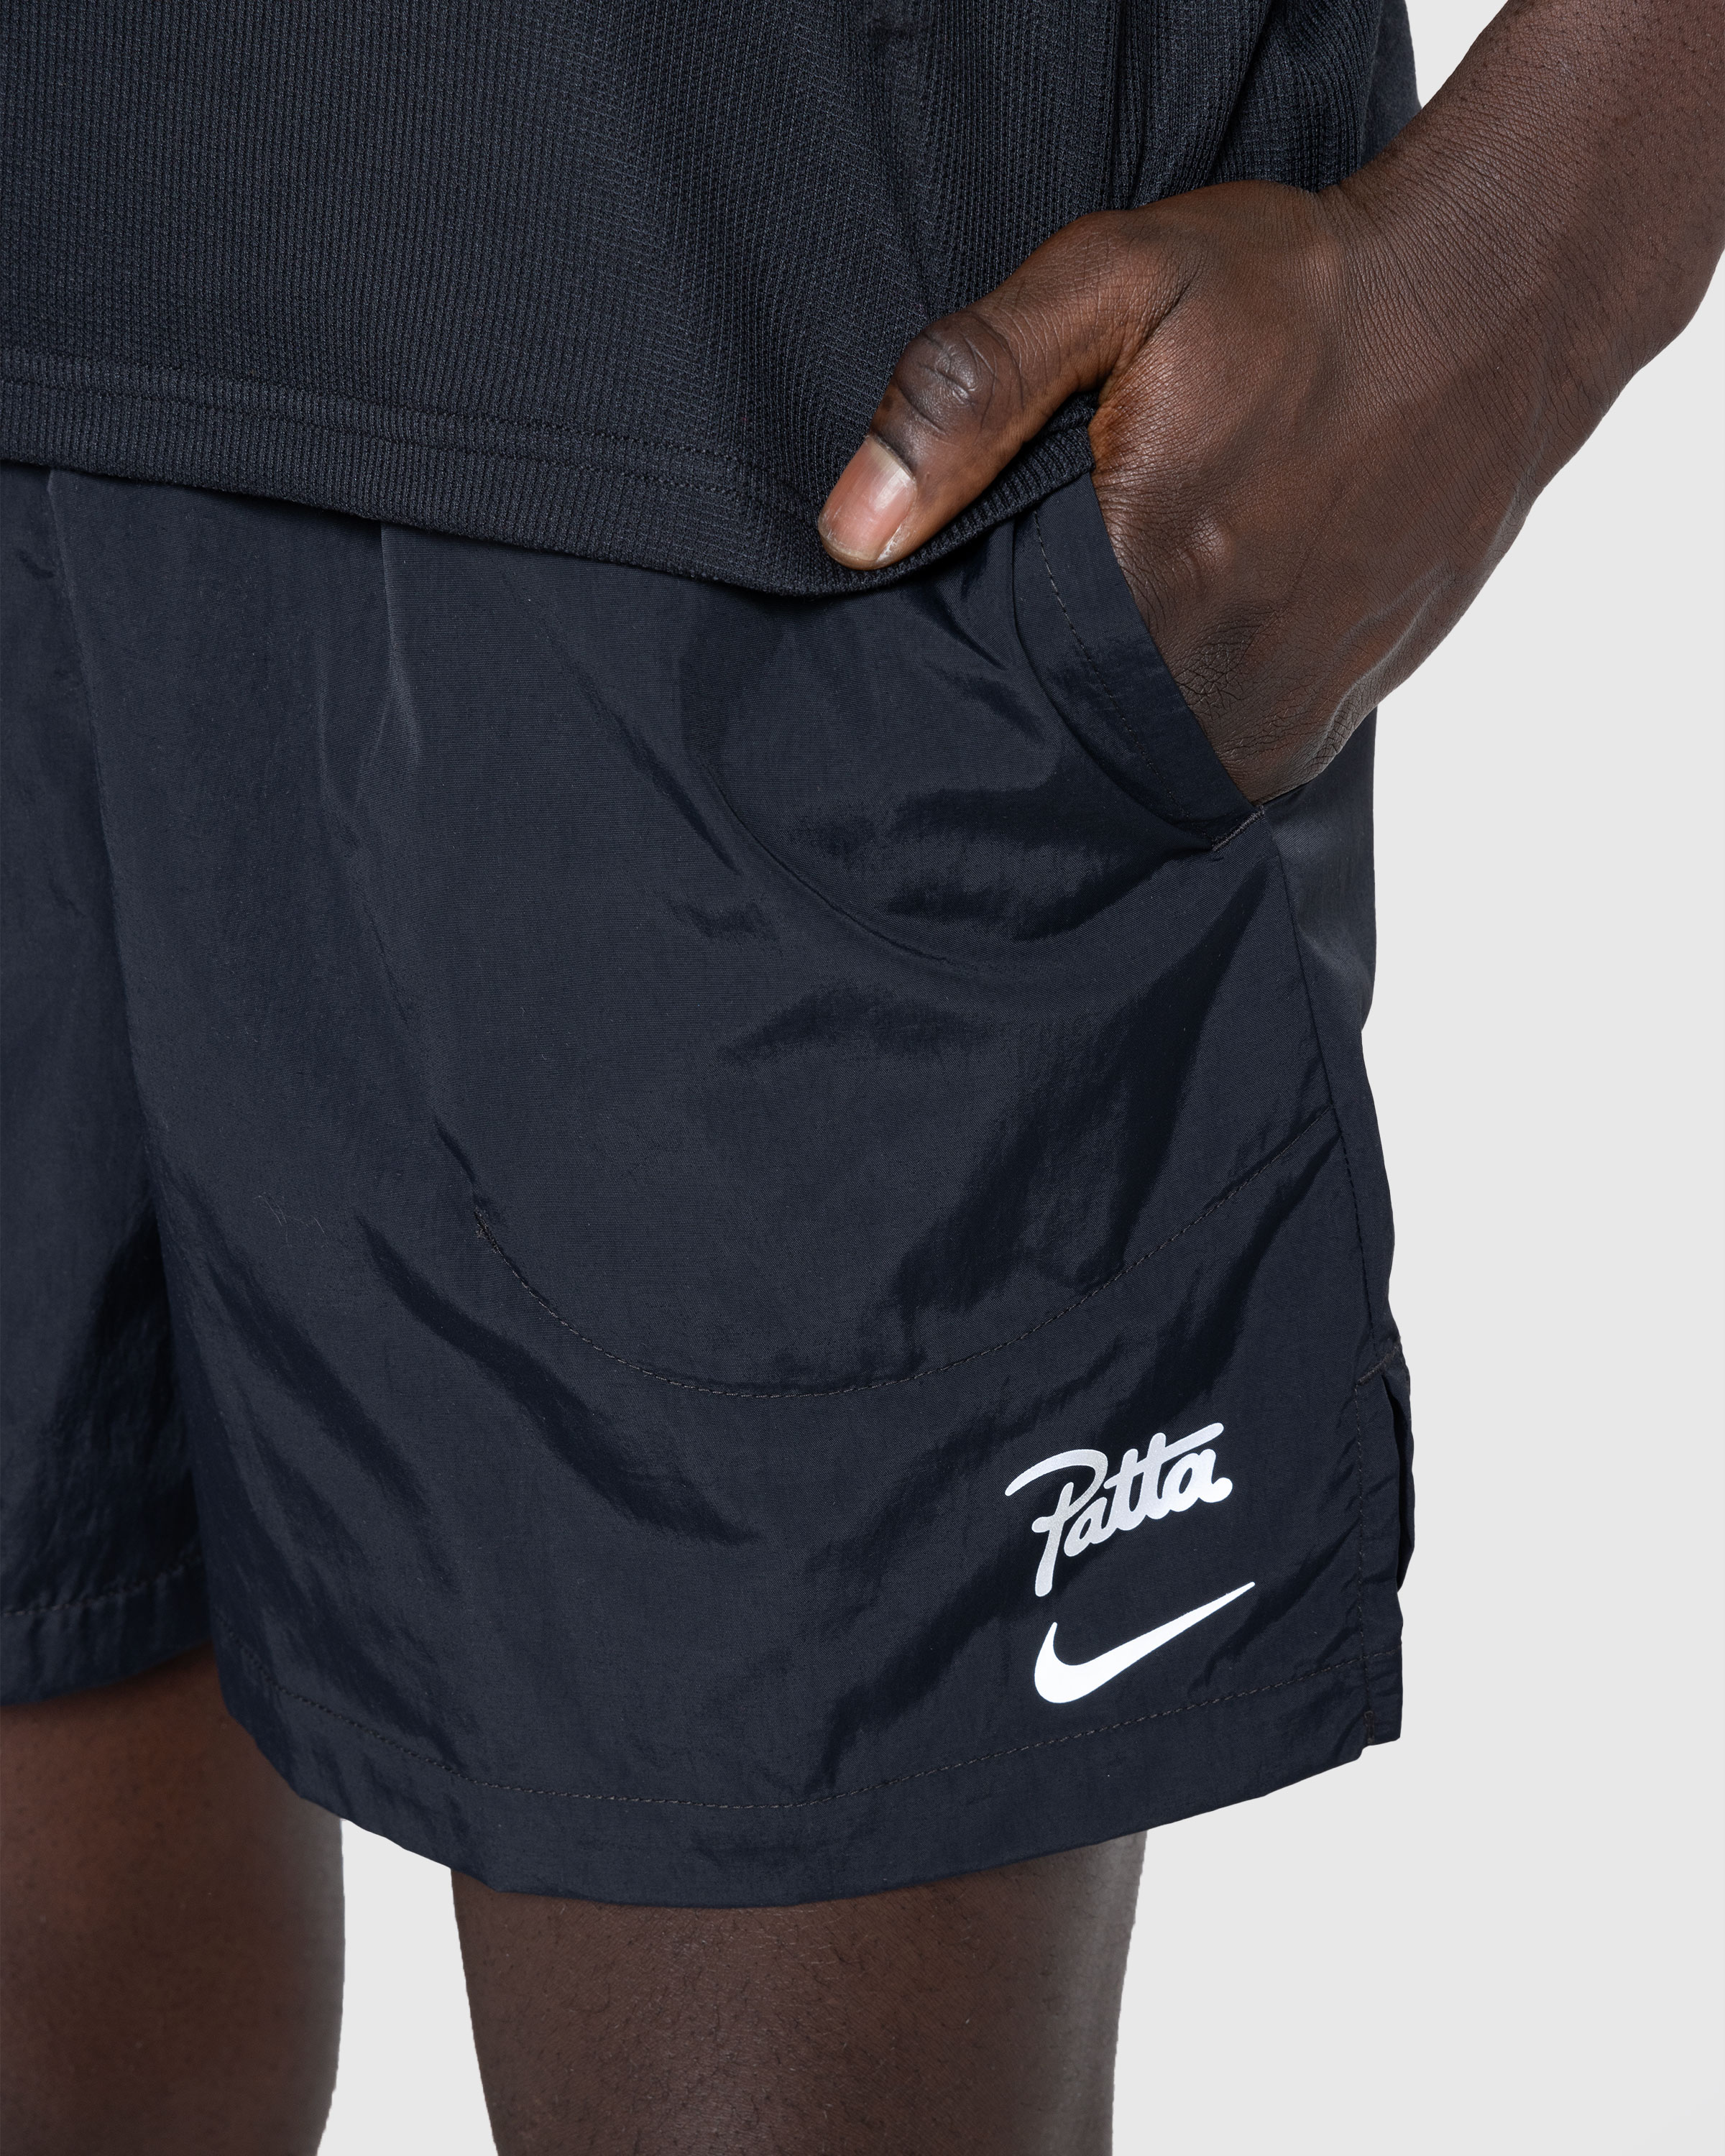 Nike x Patta – Men's Shorts Black - Active Shorts - Black - Image 5